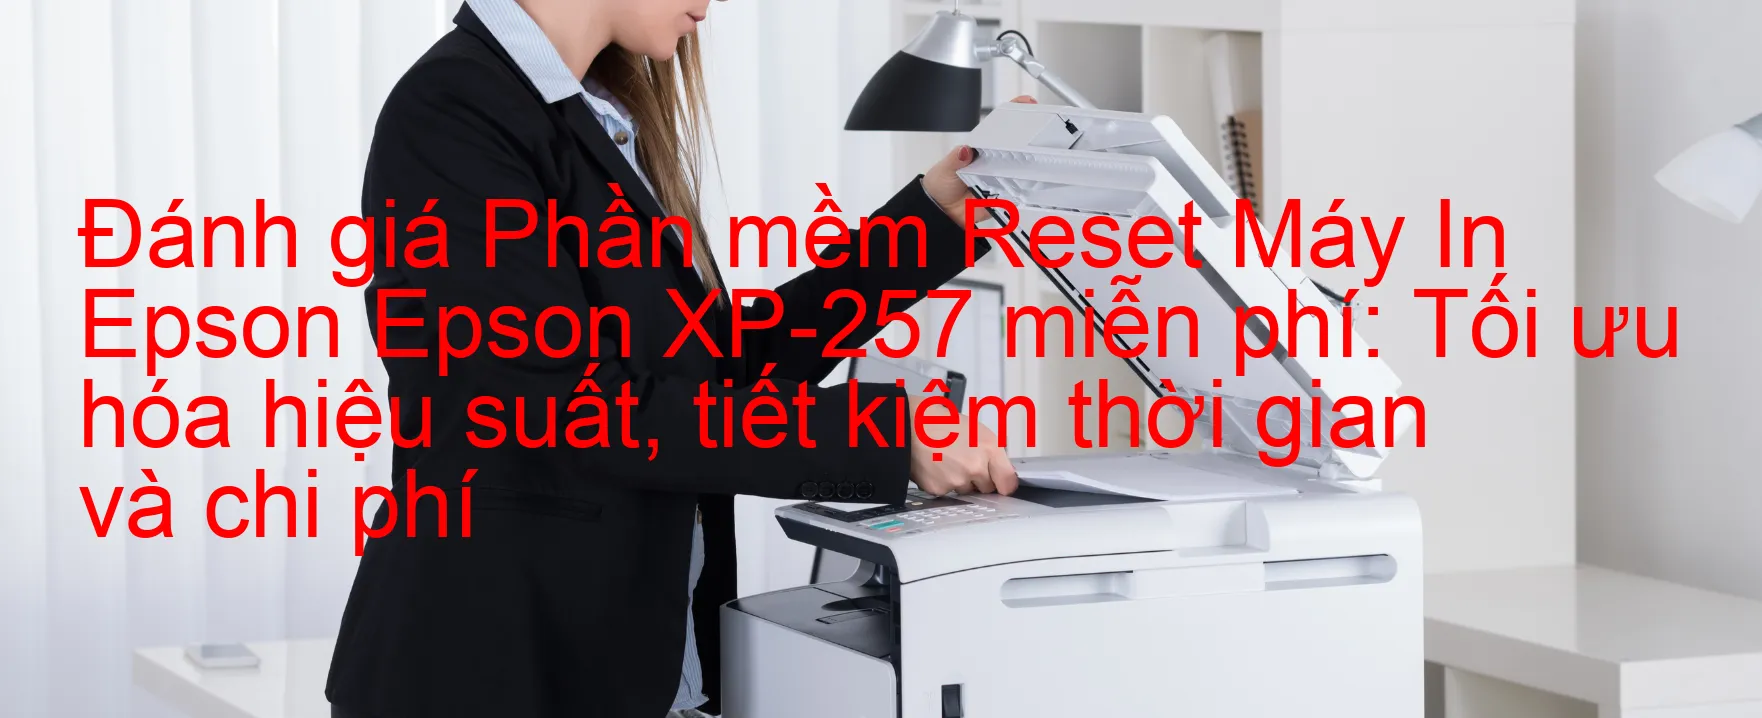 Đánh Giá phần mềm Reset Epson XP-257 Miễn Phí